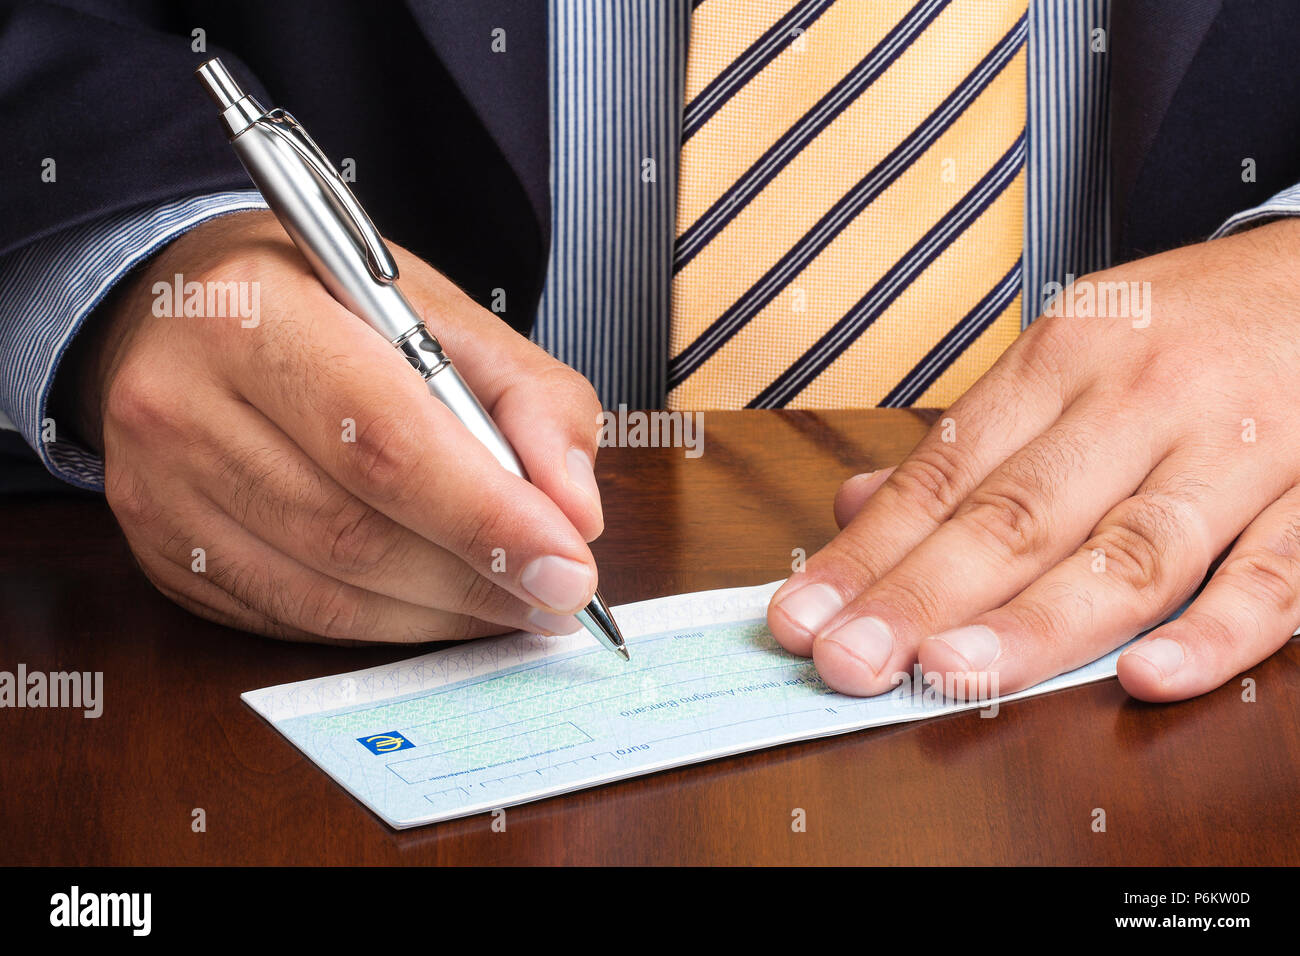 Acercamiento del empresario o vendedor firma de escritura a mano cheque en blanco Foto de stock